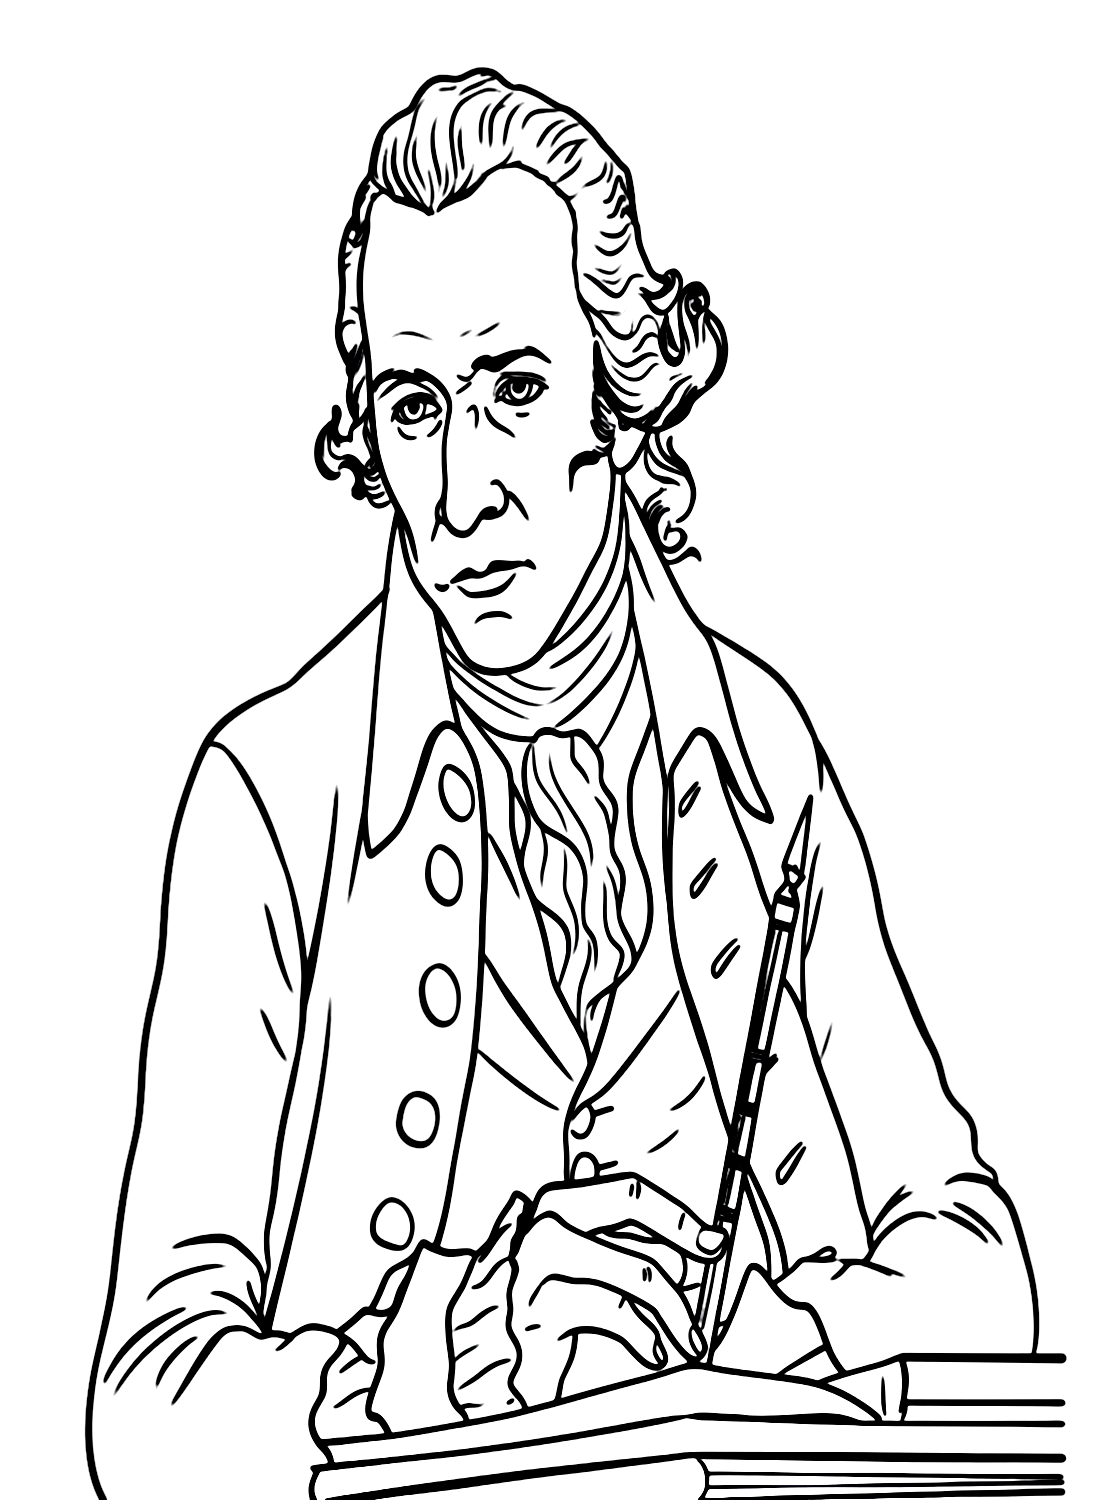 Portray Hamilton from Alexander Hamilton